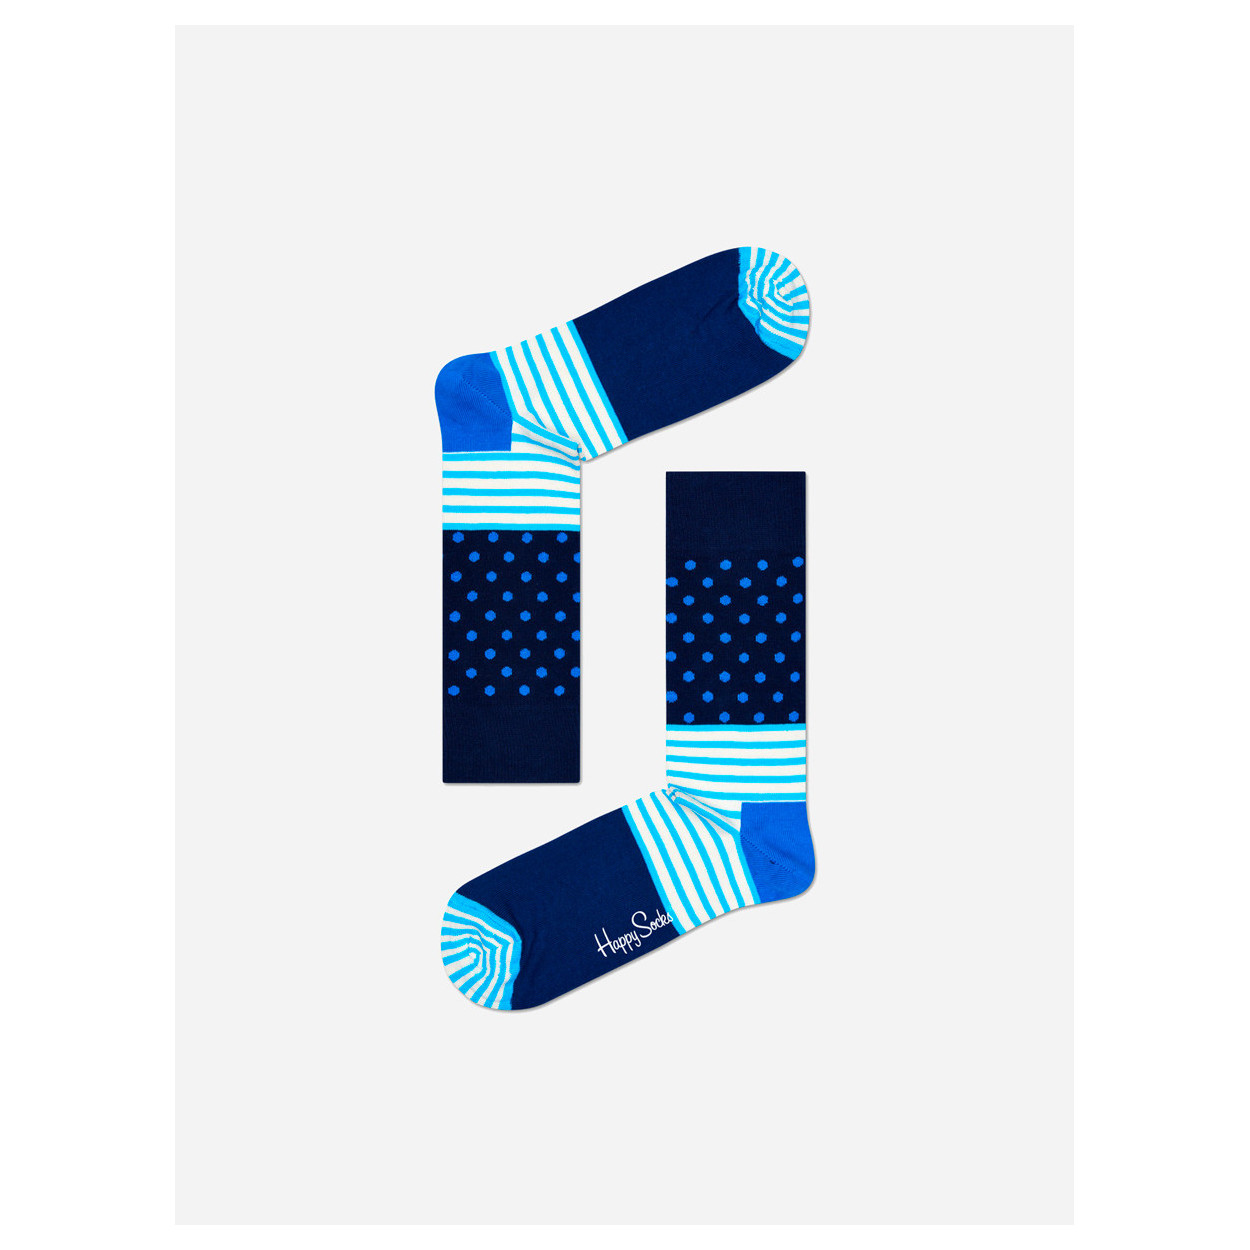 Kolorowe skarpetki - Stripes & Dots sock